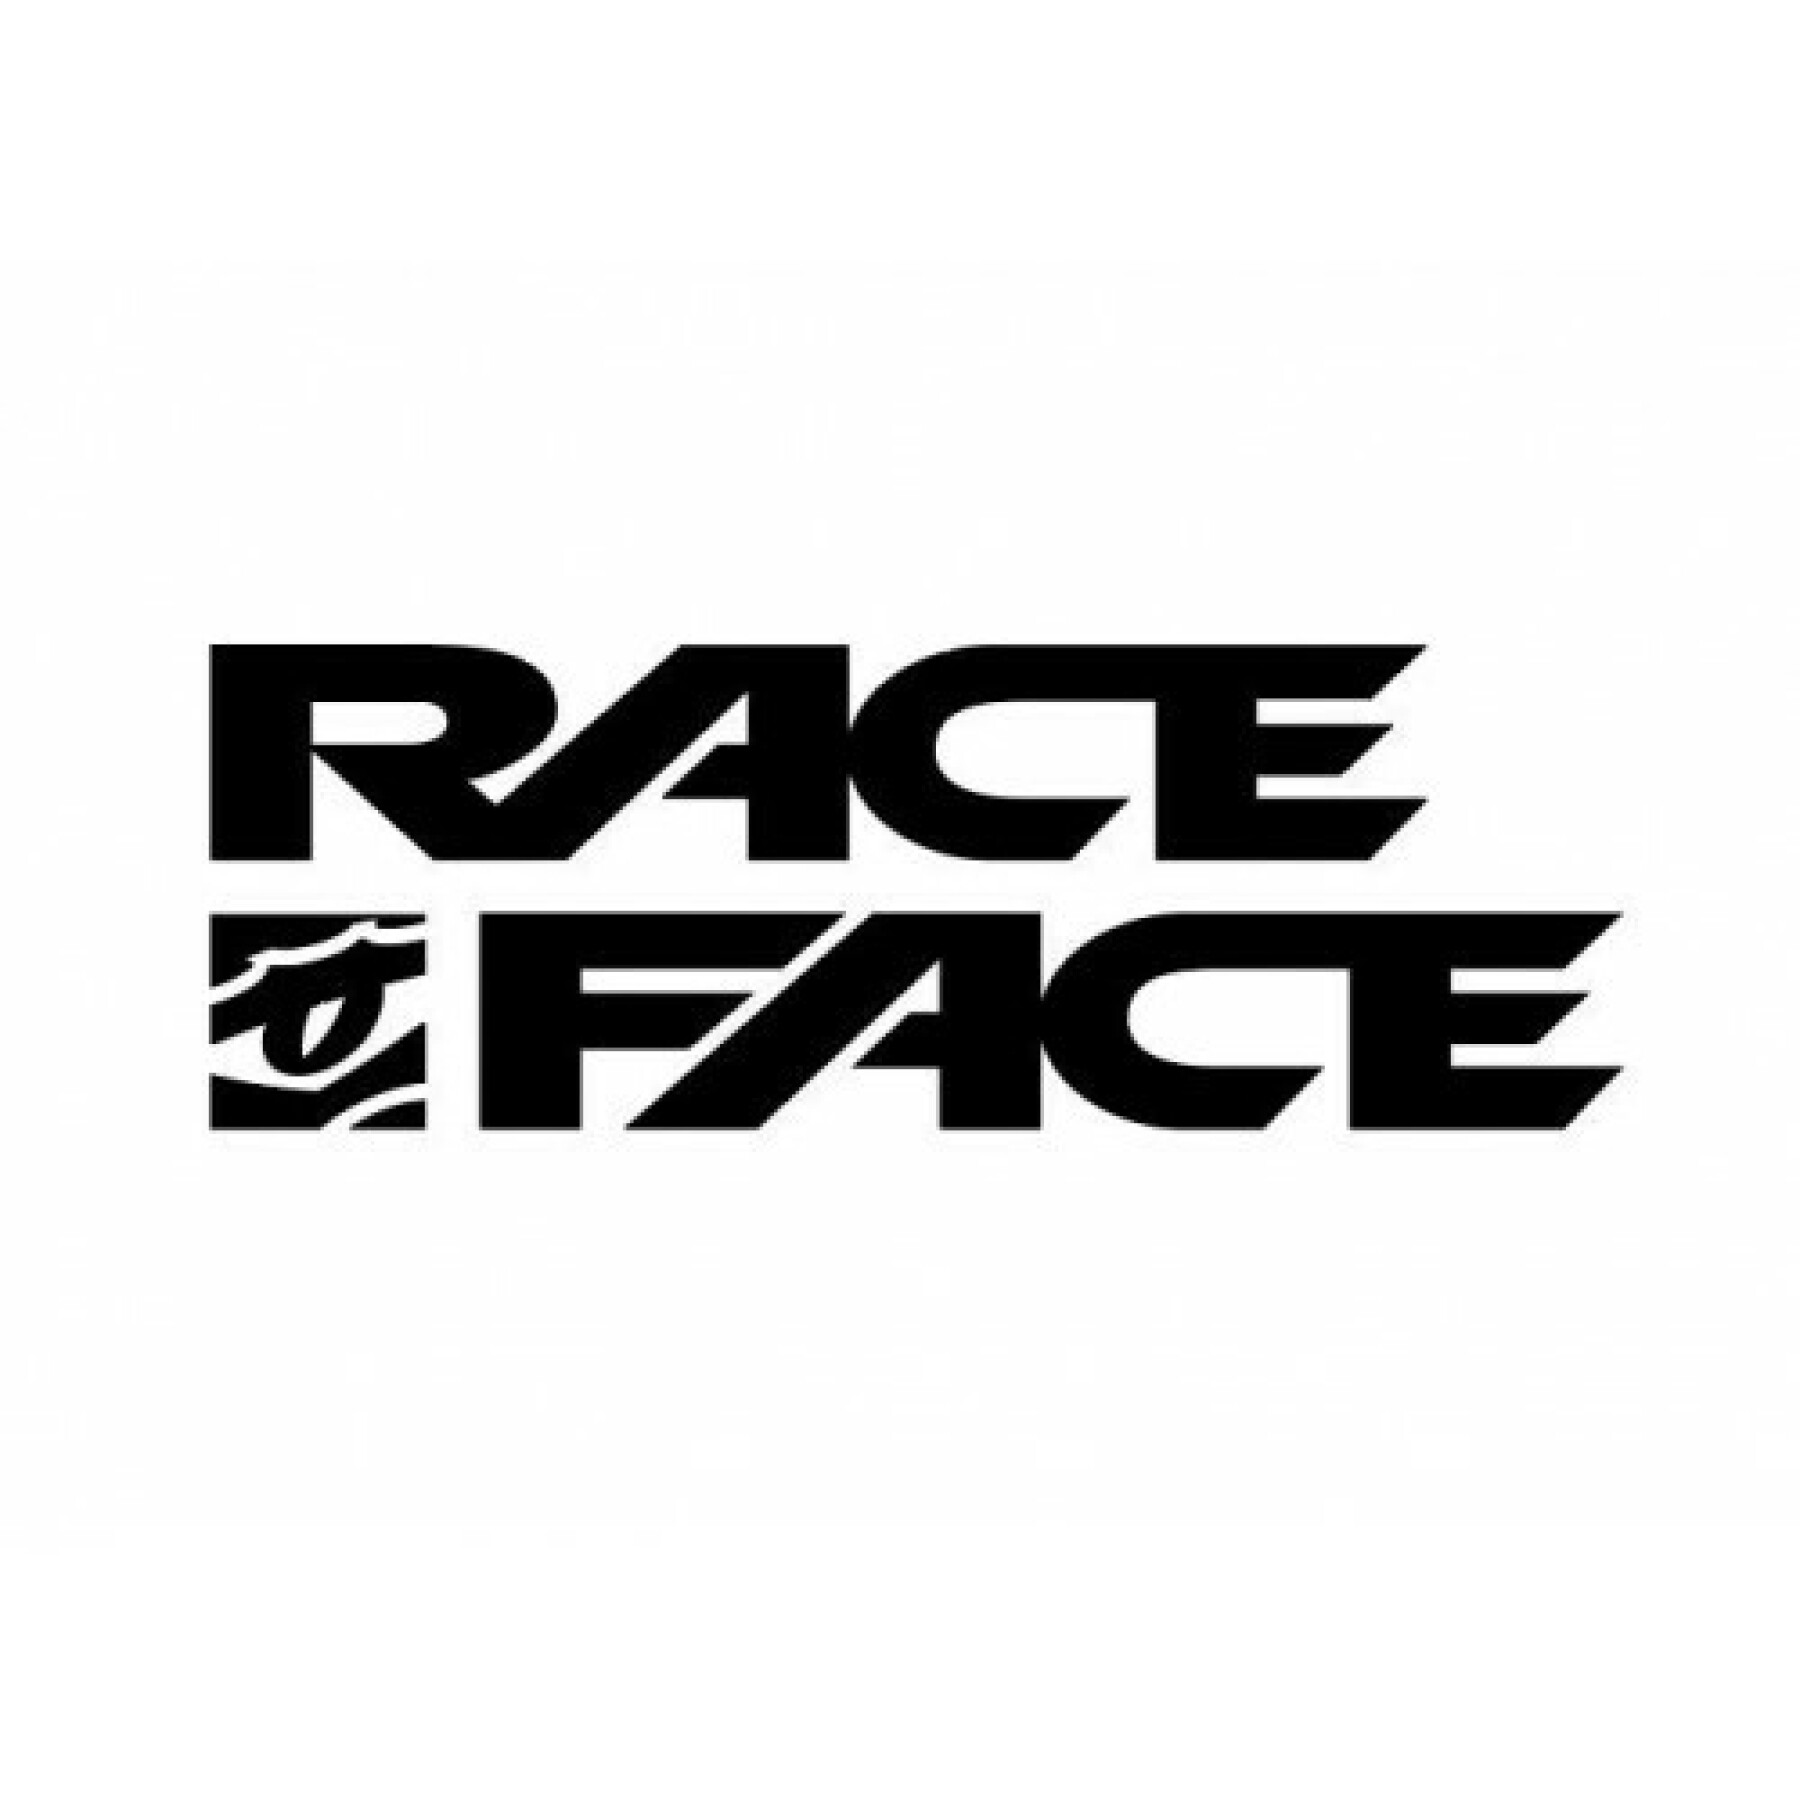 Rim Race Face arc offset - 35 - 27.5 - 32t